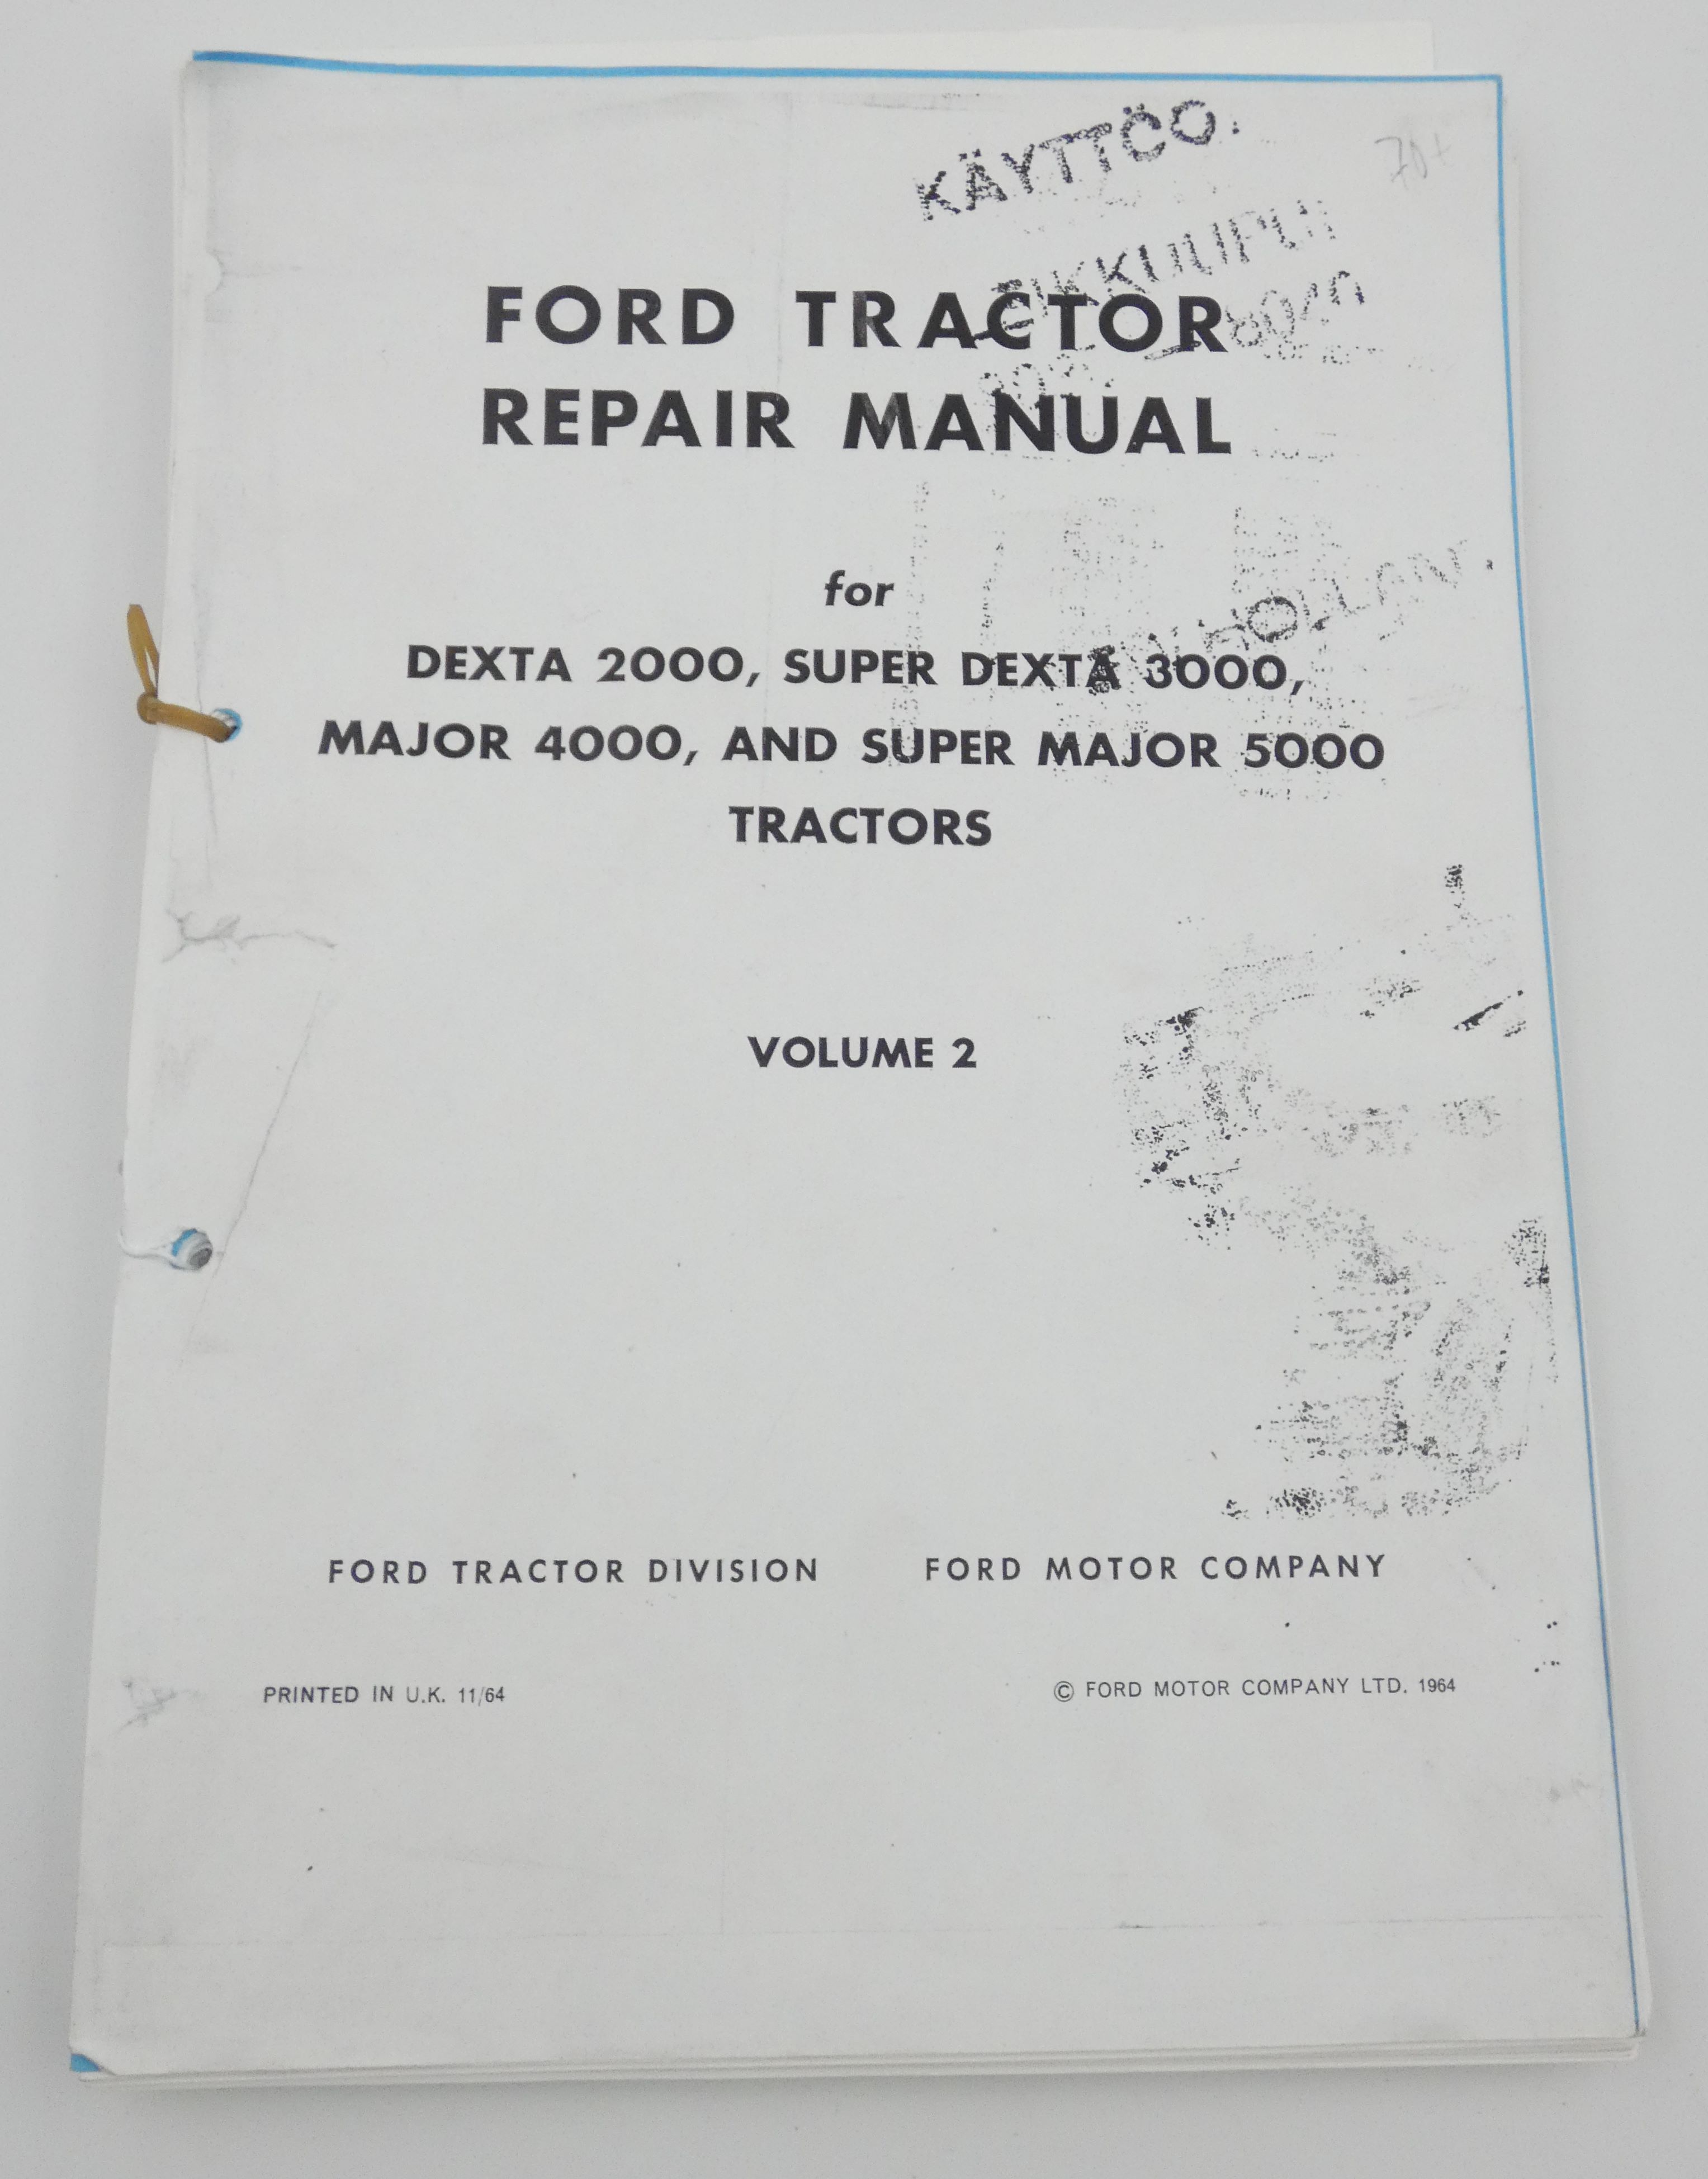 Ford Dexta 2000, Super dexta 3000, Major 4000 and Super major 5000 Tracktor repair manual